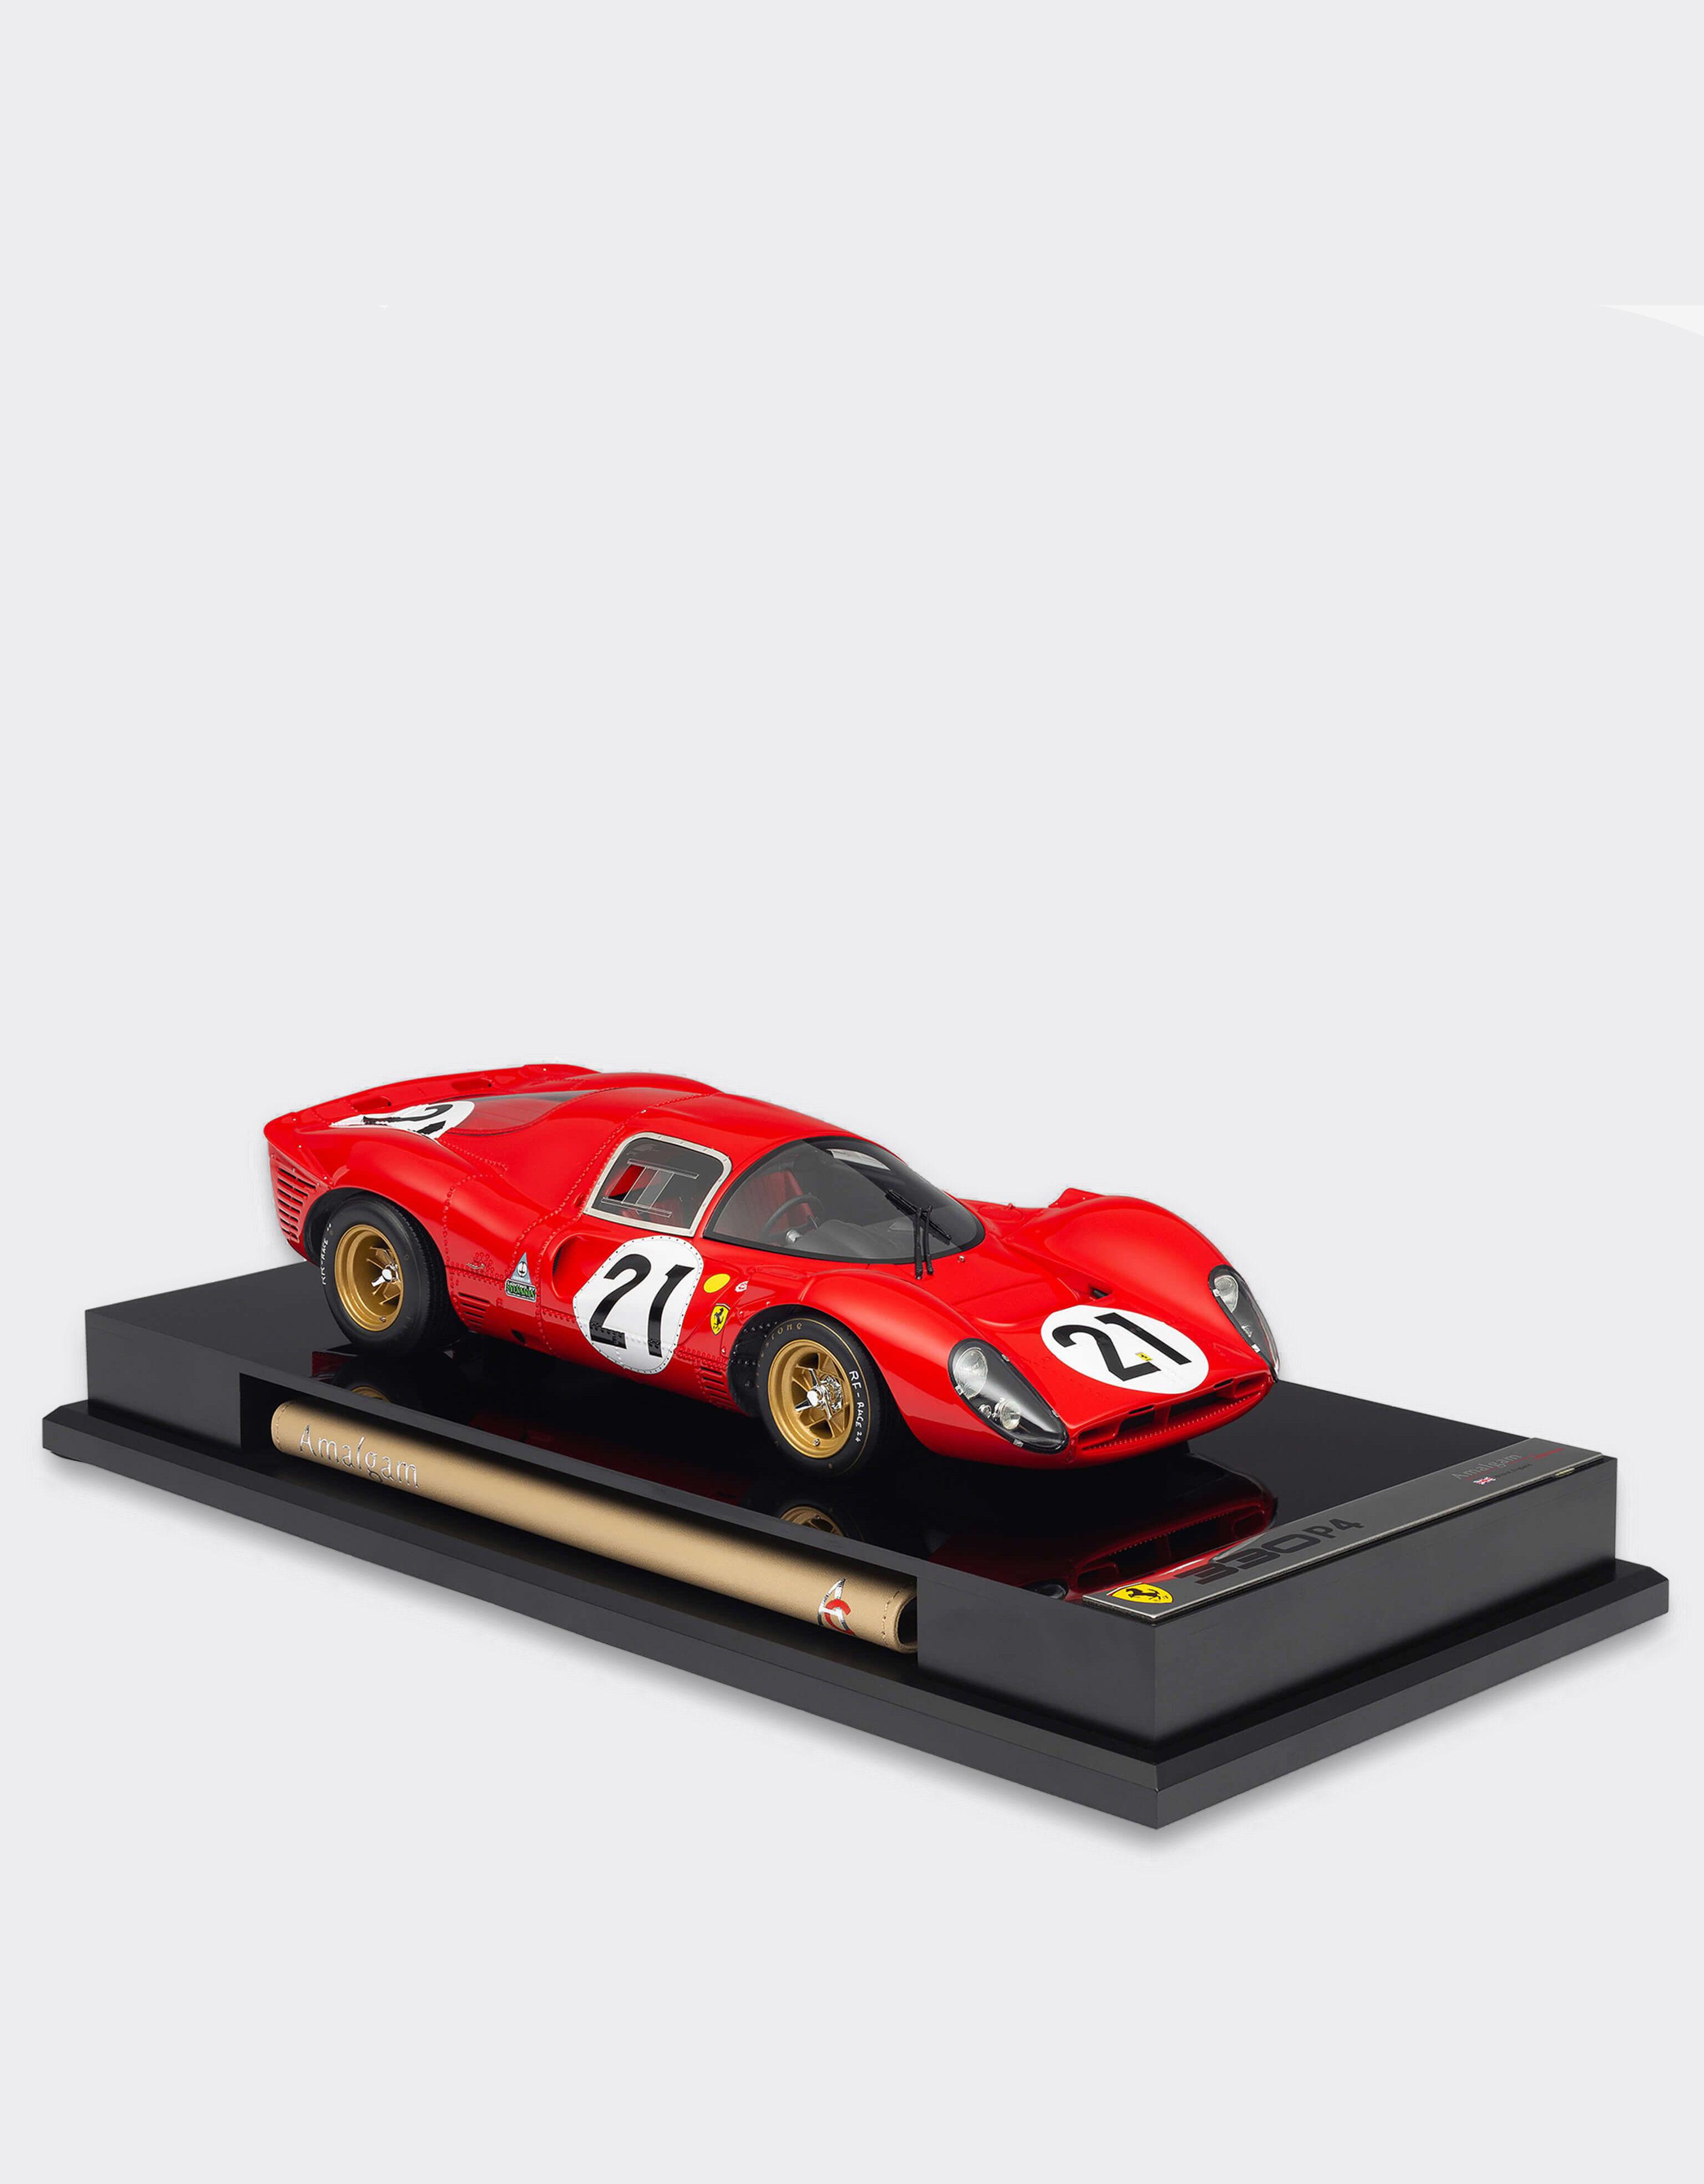 Ferrari Miniatura Ferrari 330 P4 a escala 1:18 Rojo L7588f